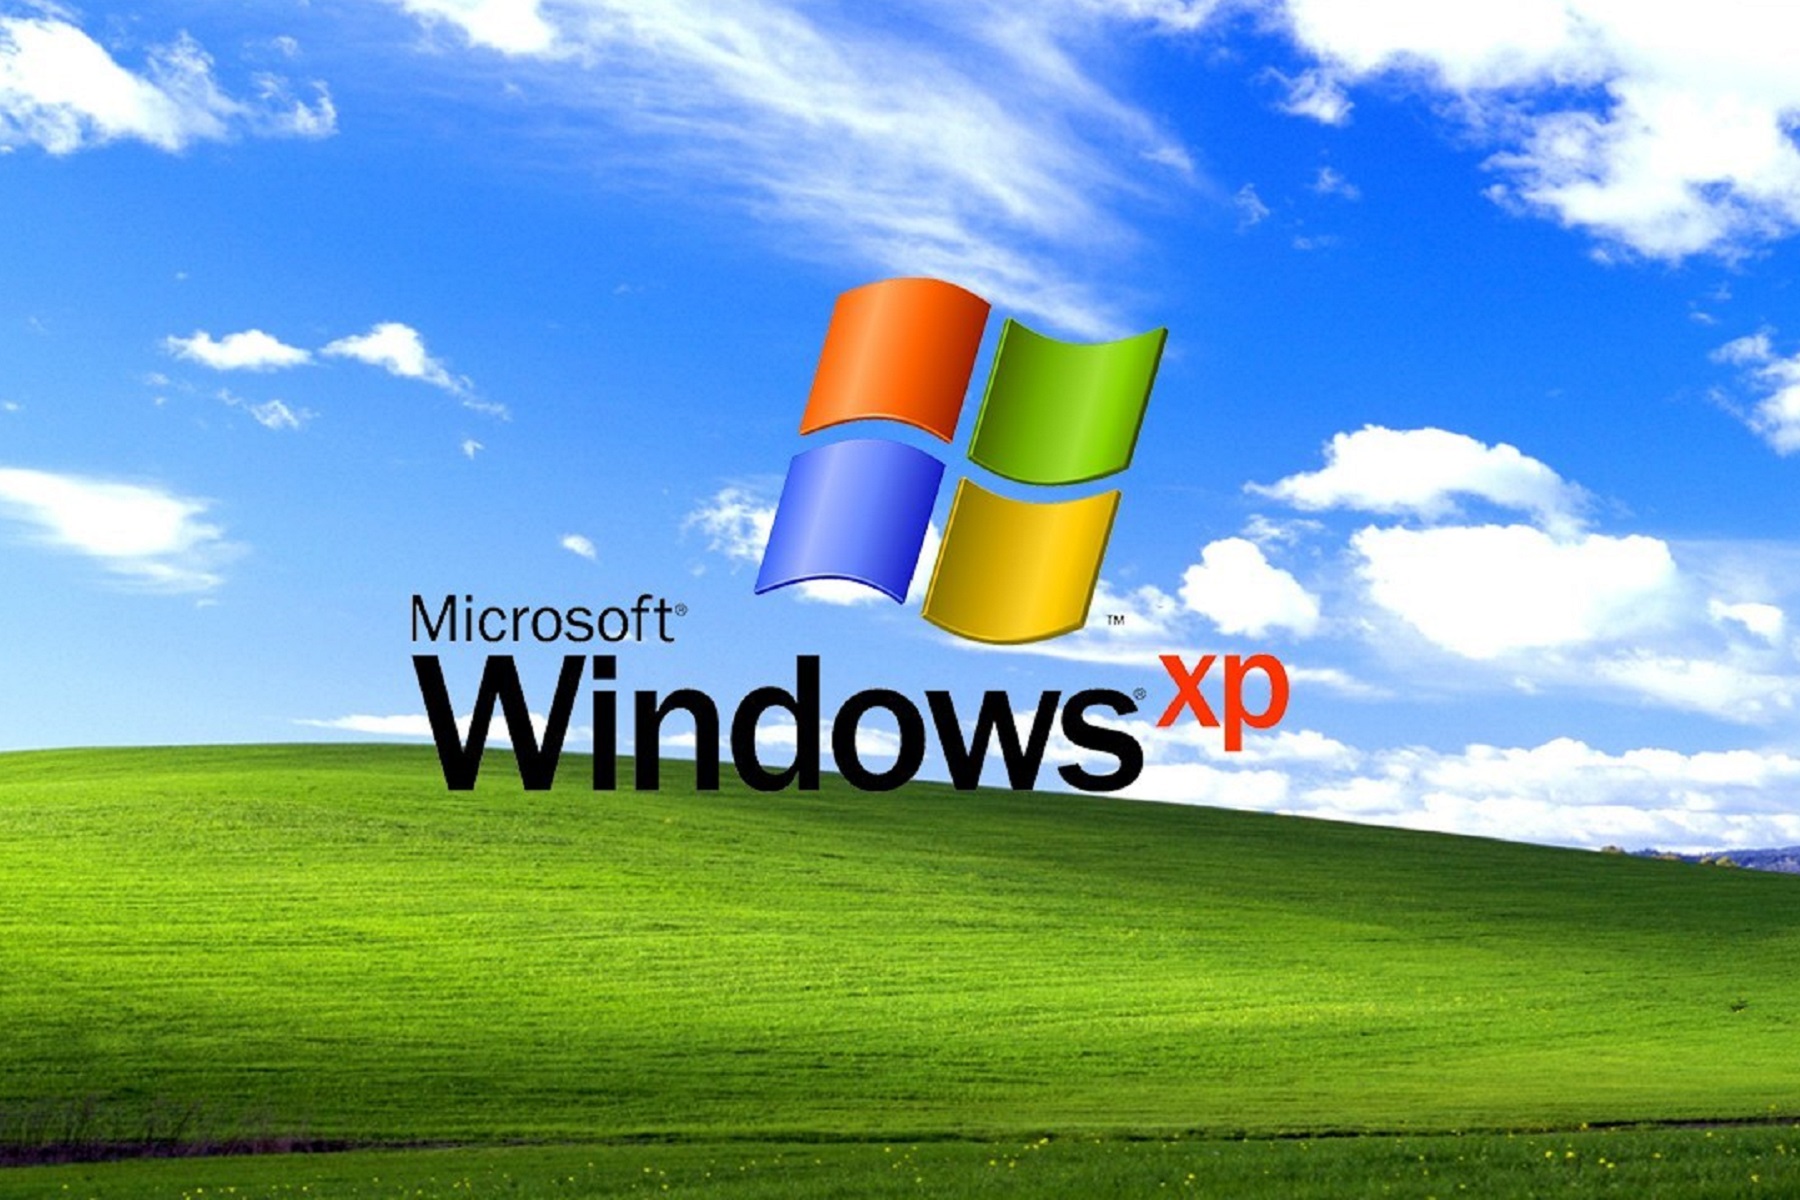 关于Windows XP源码泄露